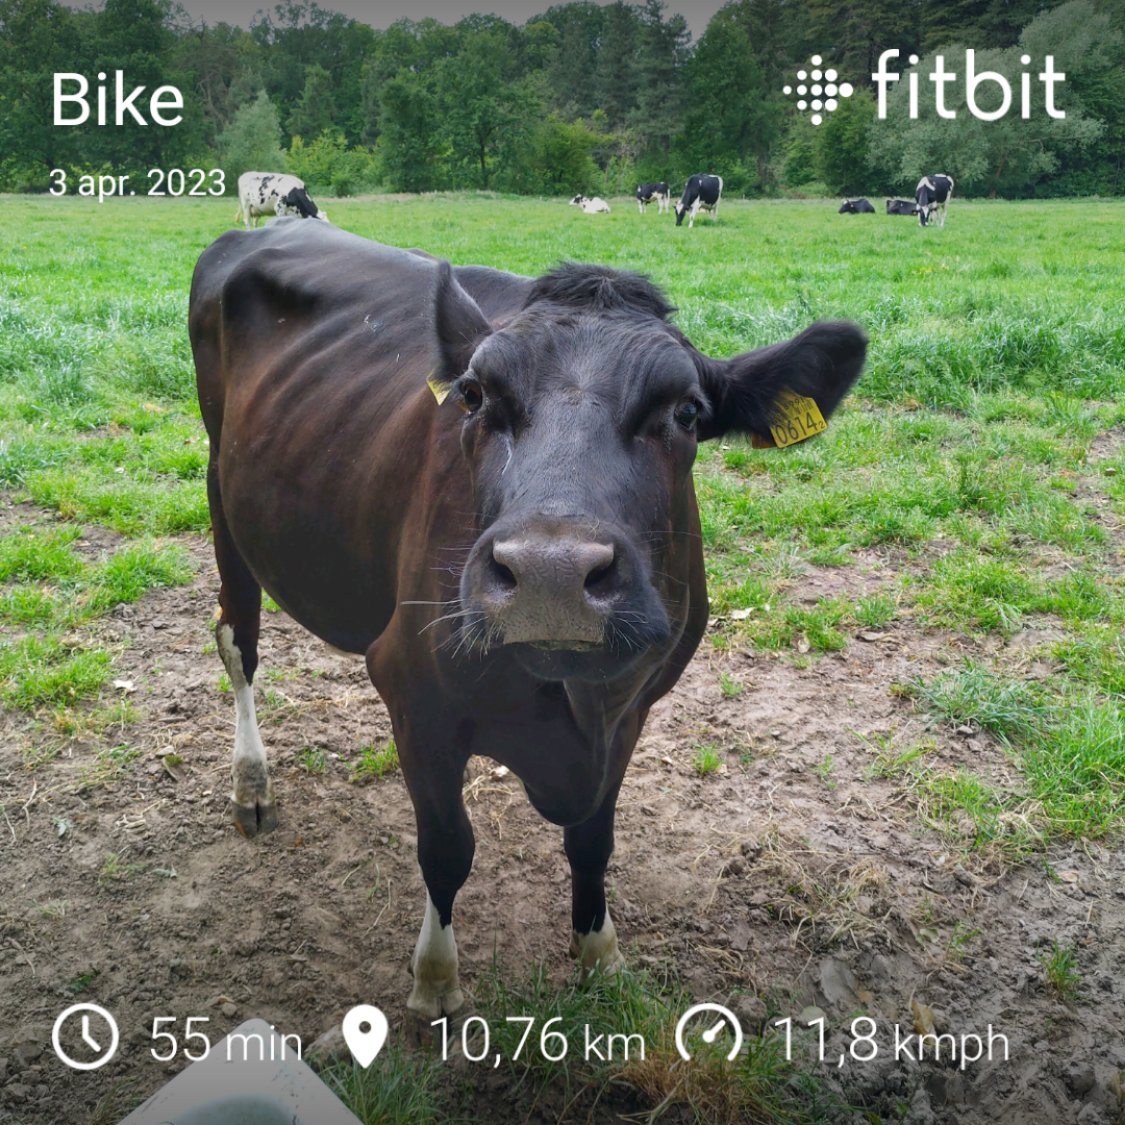 Fitbit screenshot van iemand die 55min gefietst heeft over 11 km. De foto is van een koe die wat dwazig in de camera kijkt.